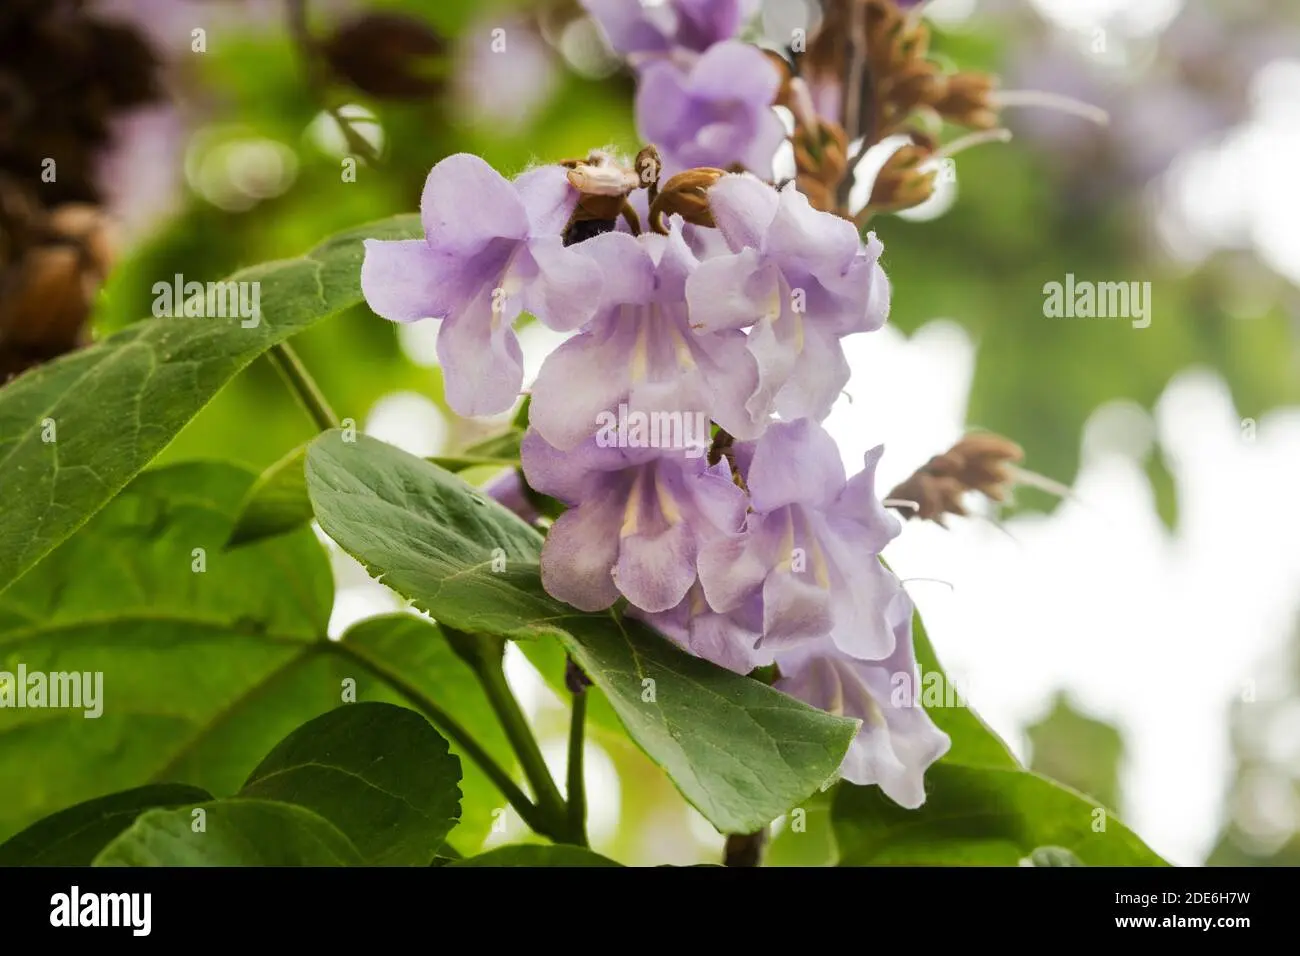 catalpa fiori viola - Quanto cresce una catalpa